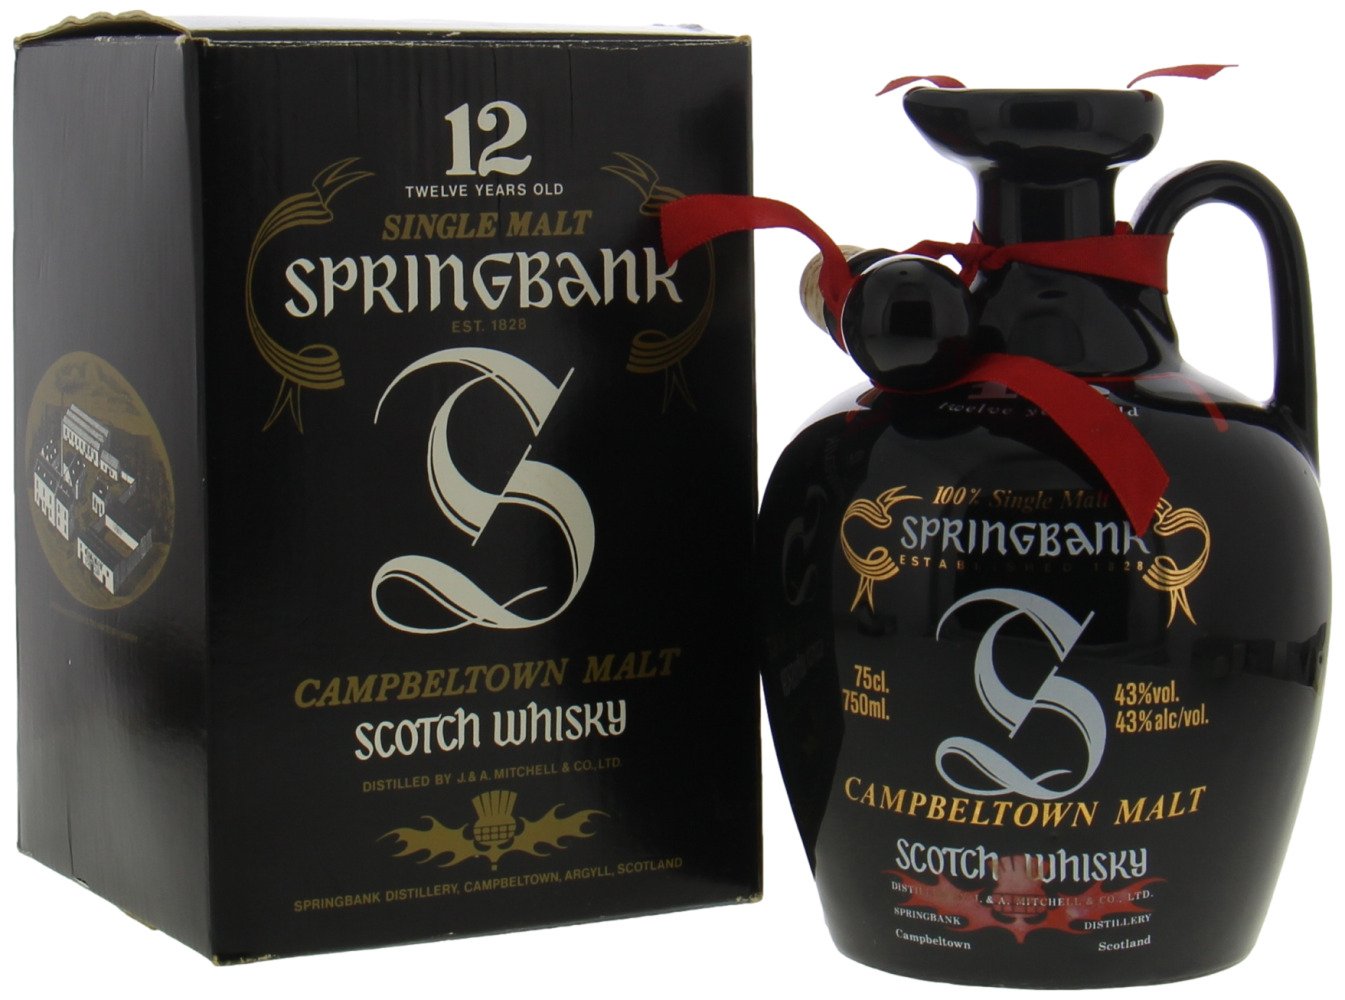 Springbank - 12 Years Old Label 100% Single Malt Black Ceramic Jug with Corkstopper 43% NV In Orginal Box